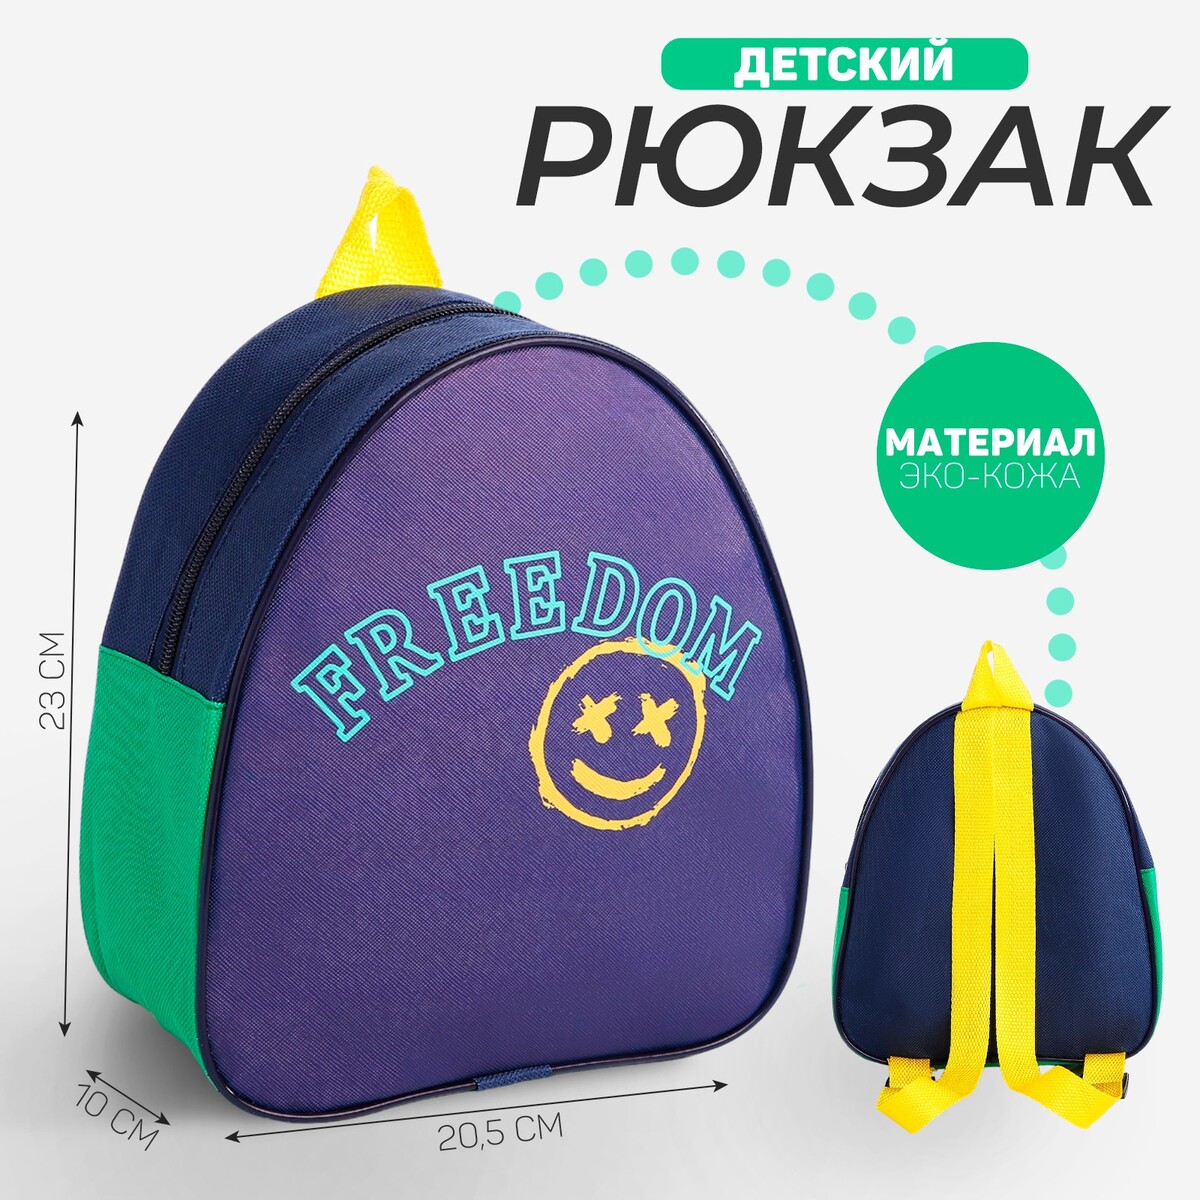 Рюкзак детский для мальчика freedom, 23х20,5 см, отдел на молнии, цвет синий